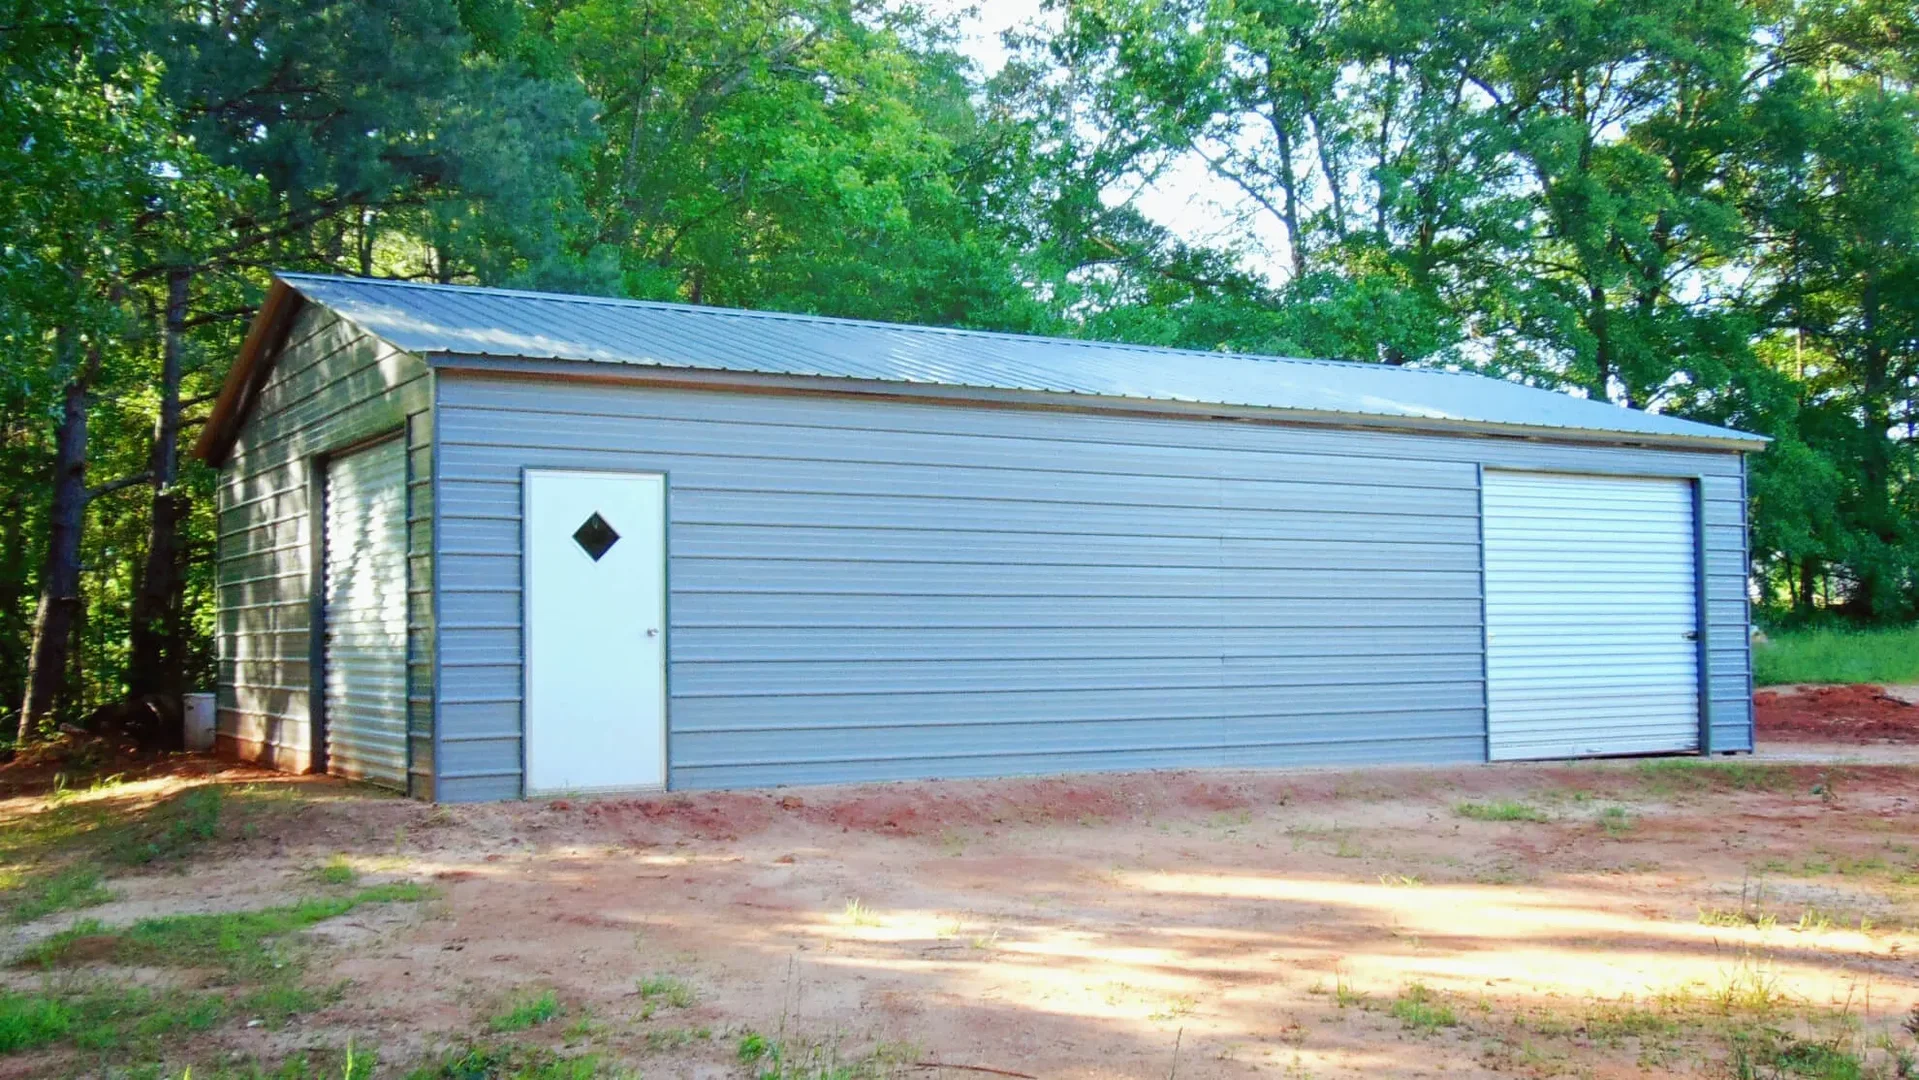 24 x 41 x 9 custom metal building with 2 garage doors